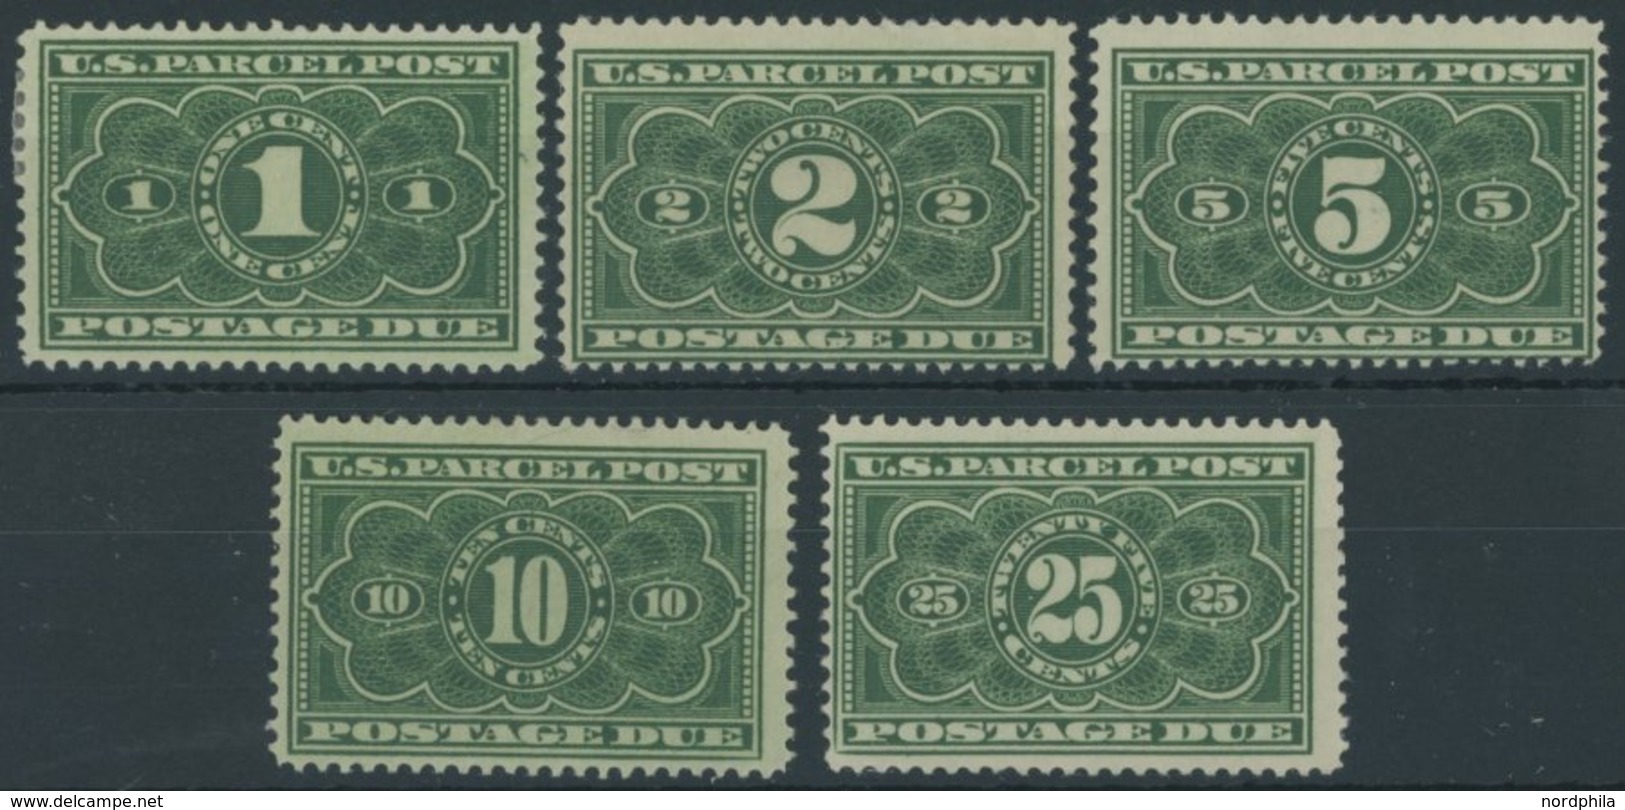 PAKET-PORTOMARKEN PP 1-5 **,* , Scott JQ 1-5, 1912, 1 - 25 C. U.S. Parcel Post Postage Due, Mi.Nr. 1 Und 4 Falzrest, Son - Paquetes & Encomiendas